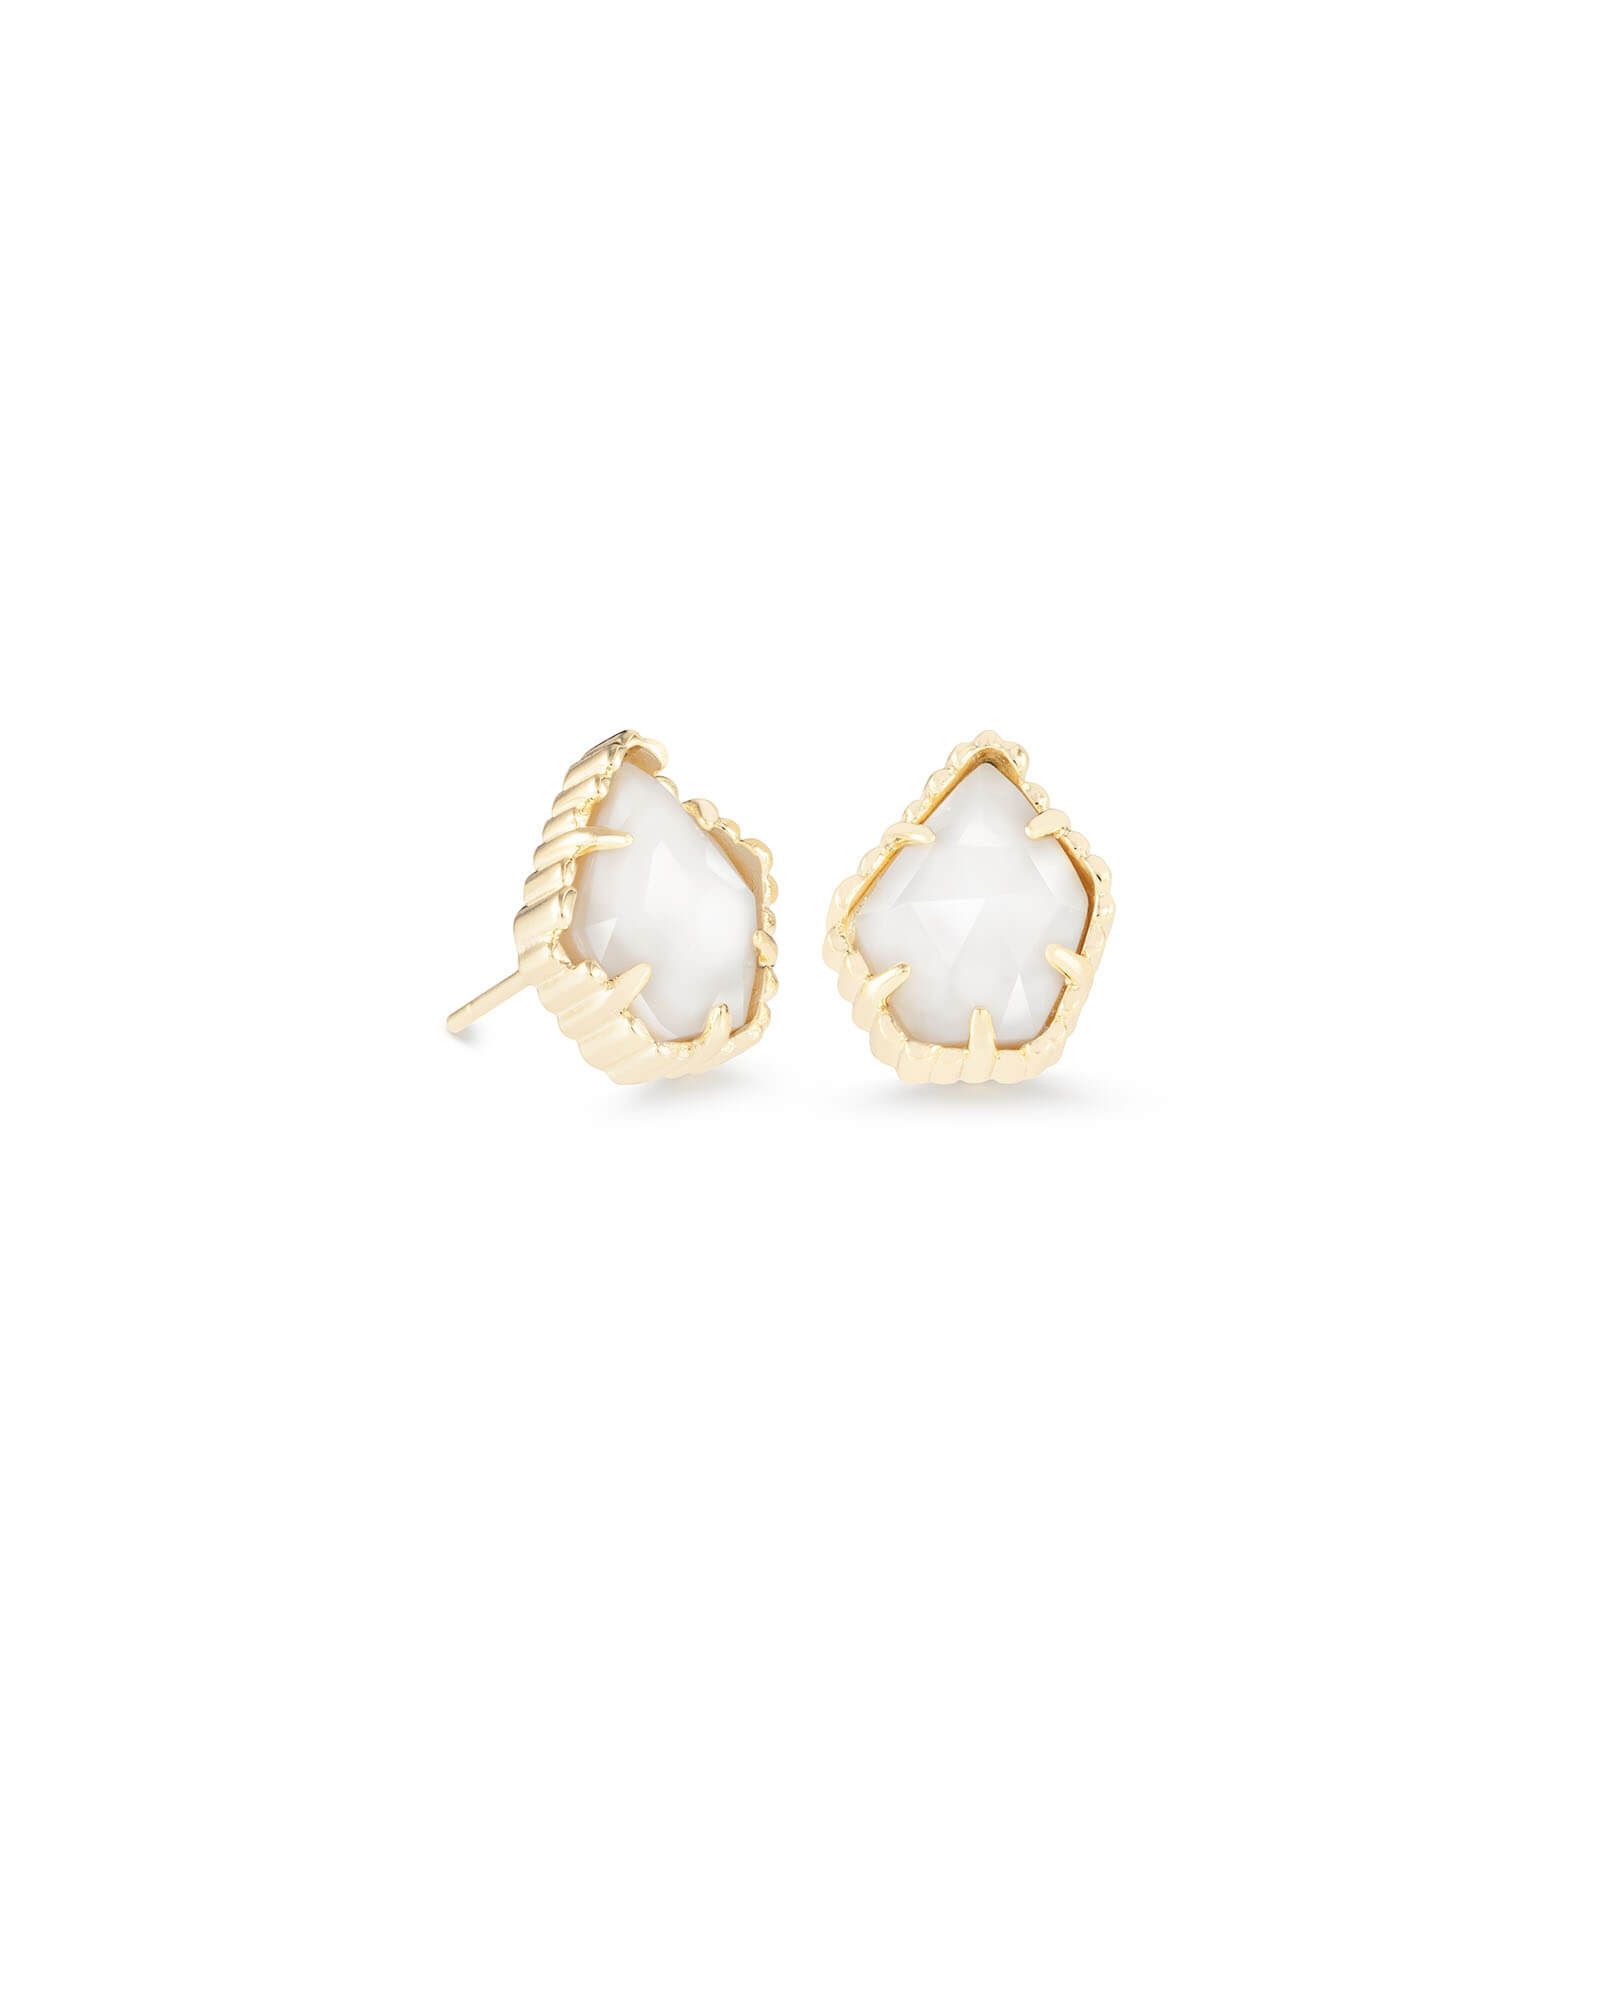 Tessa Gold Stud Earrings in White Pearl | Kendra Scott | Kendra Scott